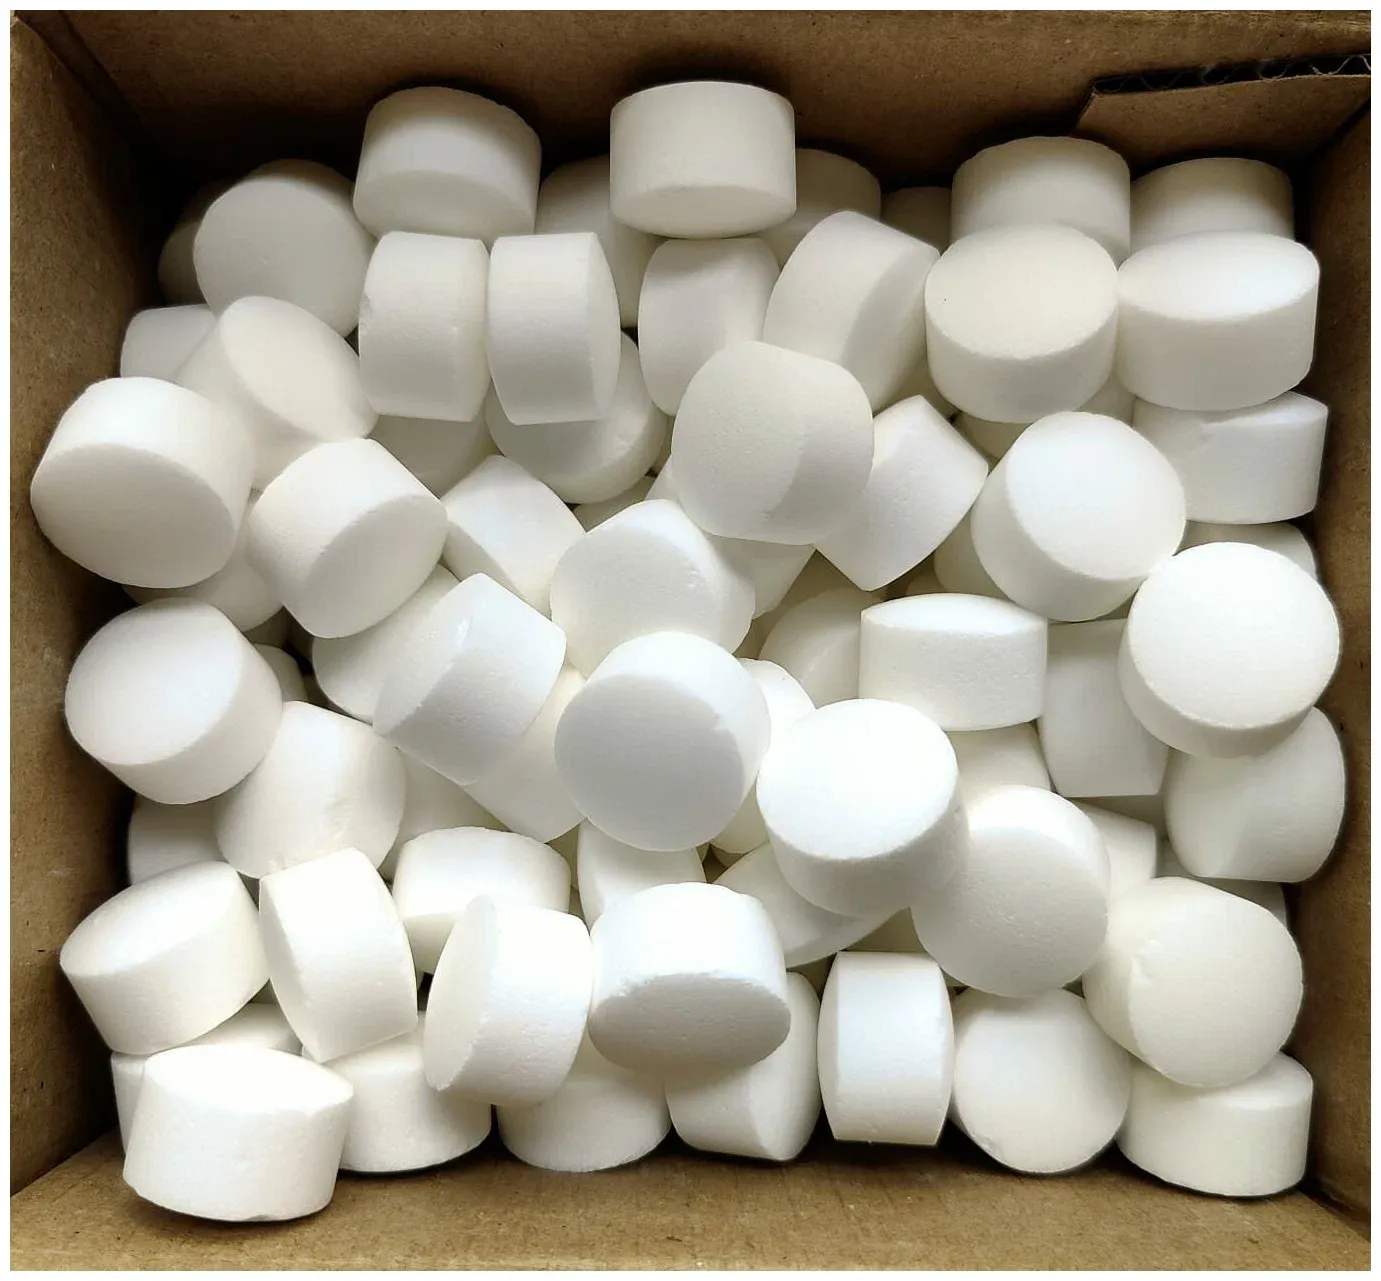 Соль пищевая выварочная таблетированная по ТУ 9192-001-88280869-2012 из сырья по ГОСТ Р 51574-2018 в мешках по 25 кг